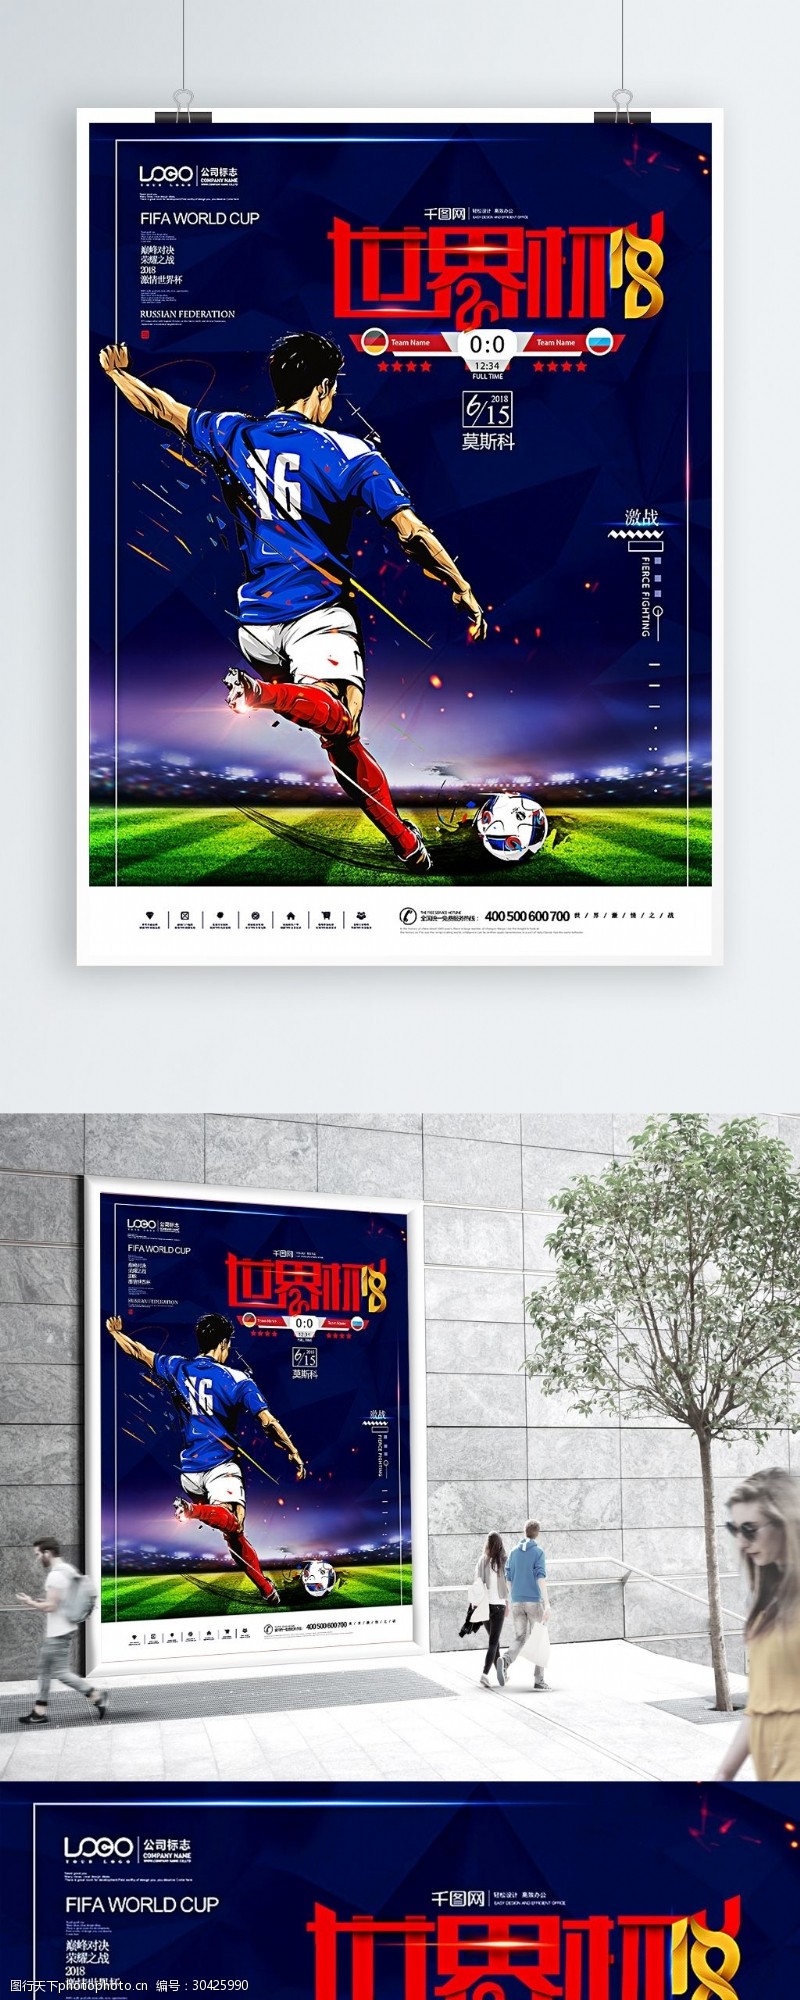 激情世界杯2018征战世界杯足球激情对决原创海报